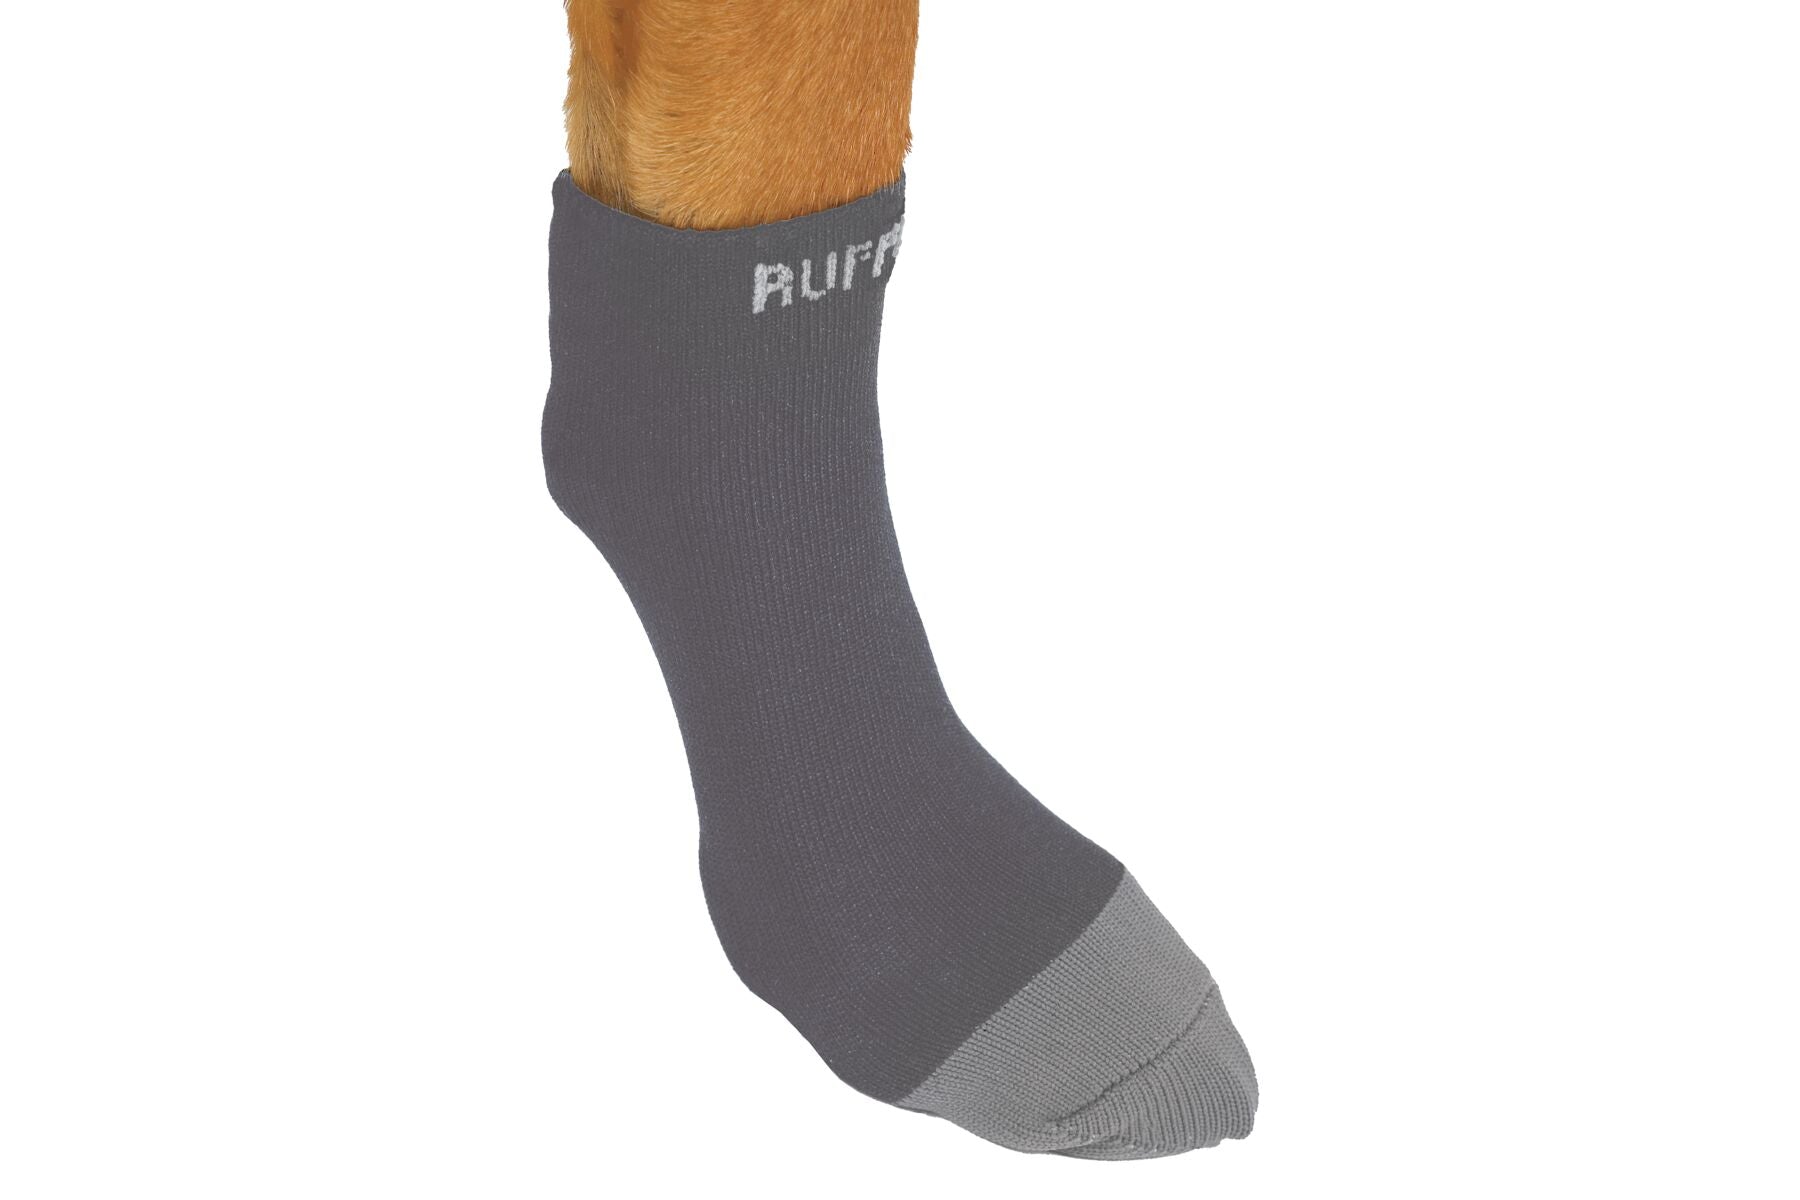 An image of Ruffwear Bark'n Boot™ dog socks.